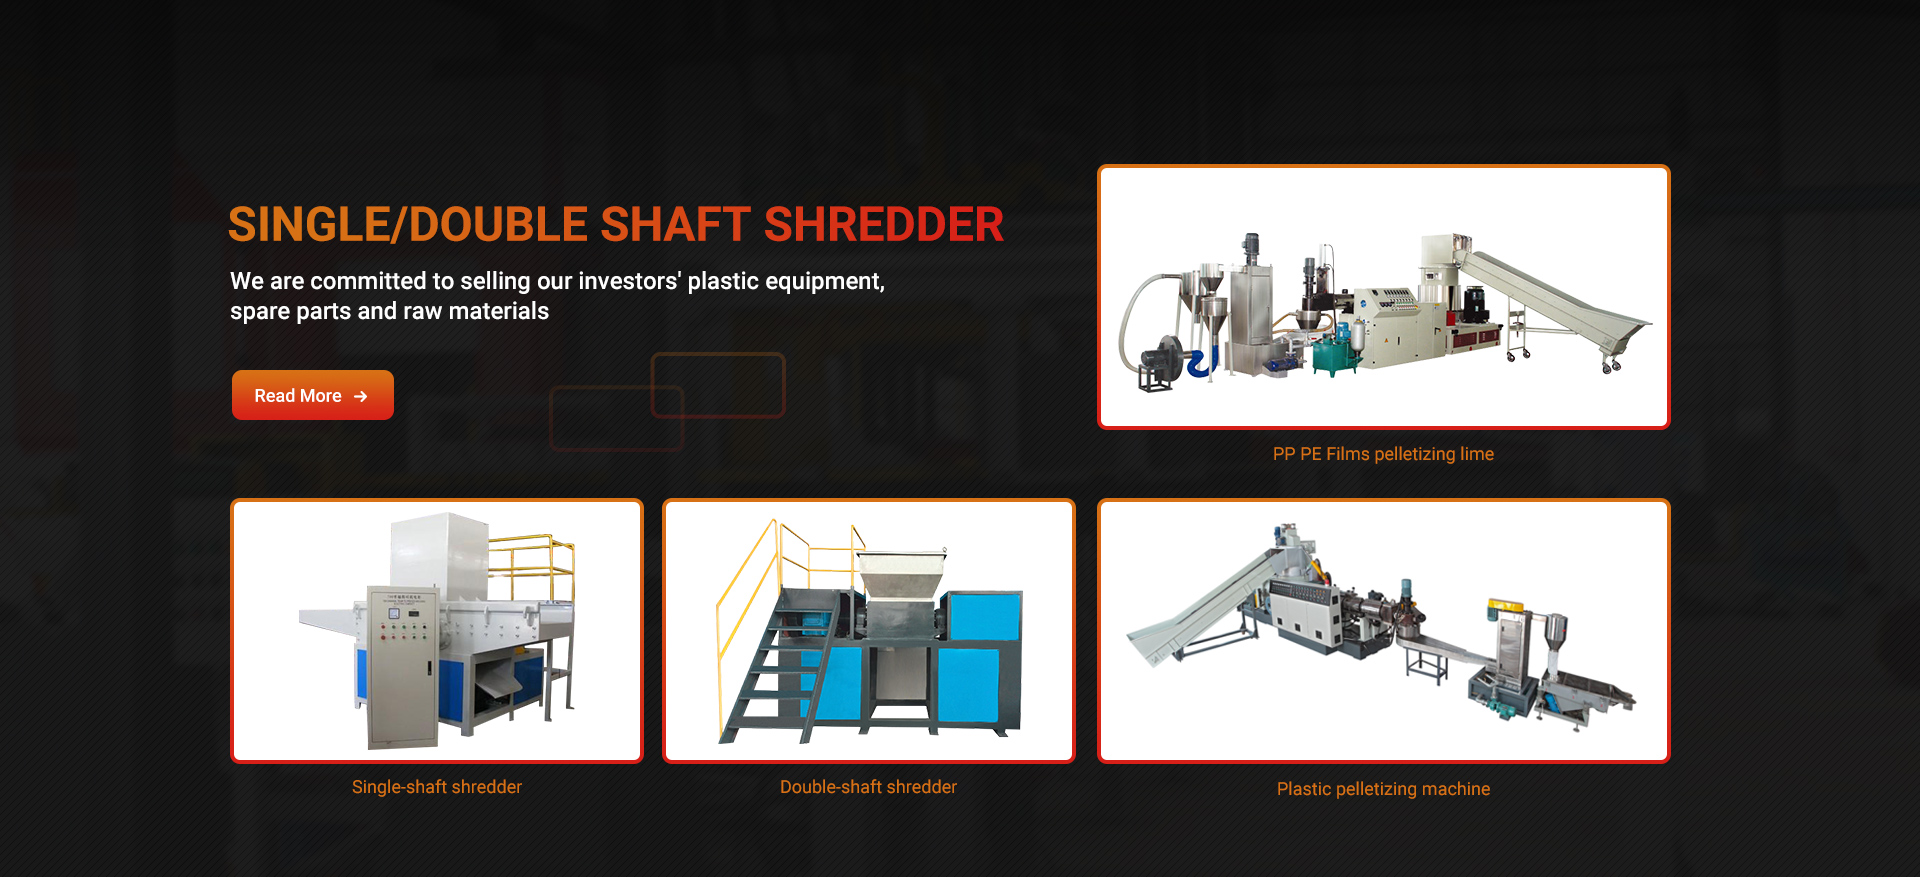 Single/double shaft shredder 